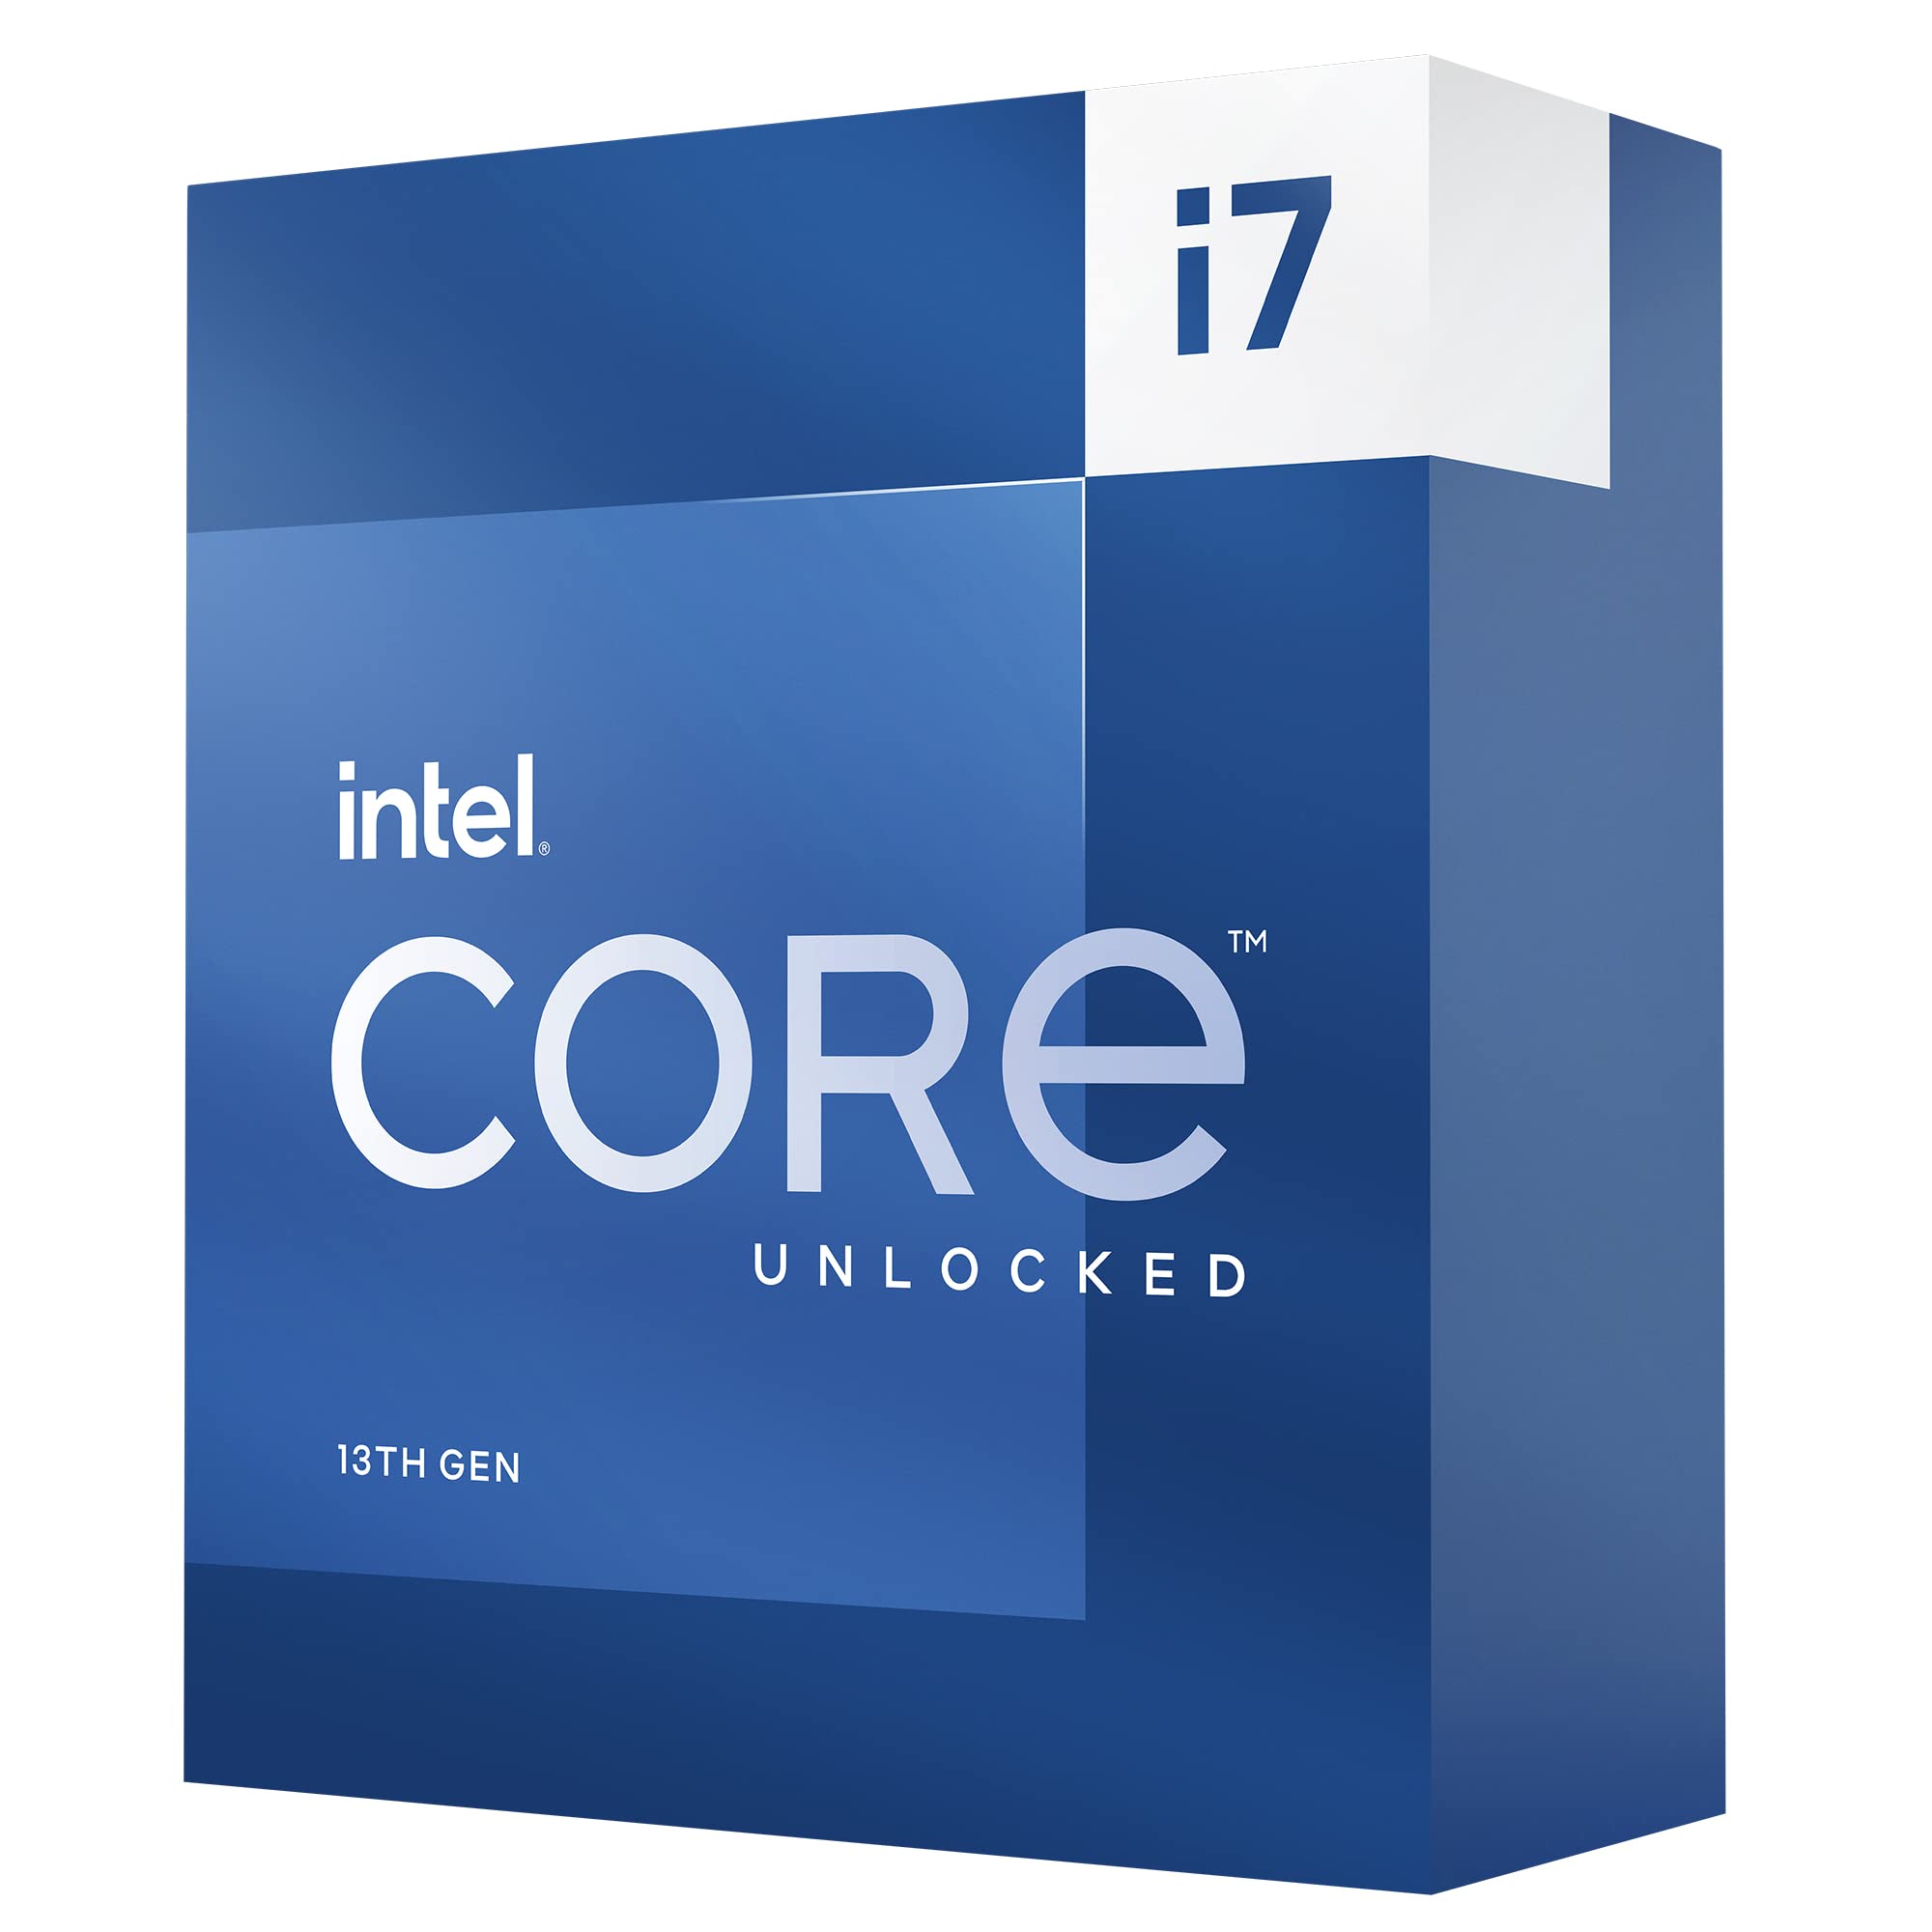 Intel Core i7-13700K Desktop Processor 16 cores (8 P-cores + 8 E-cores) 30M Cache, up to 5.4 GHz  Amazon.com $380.44